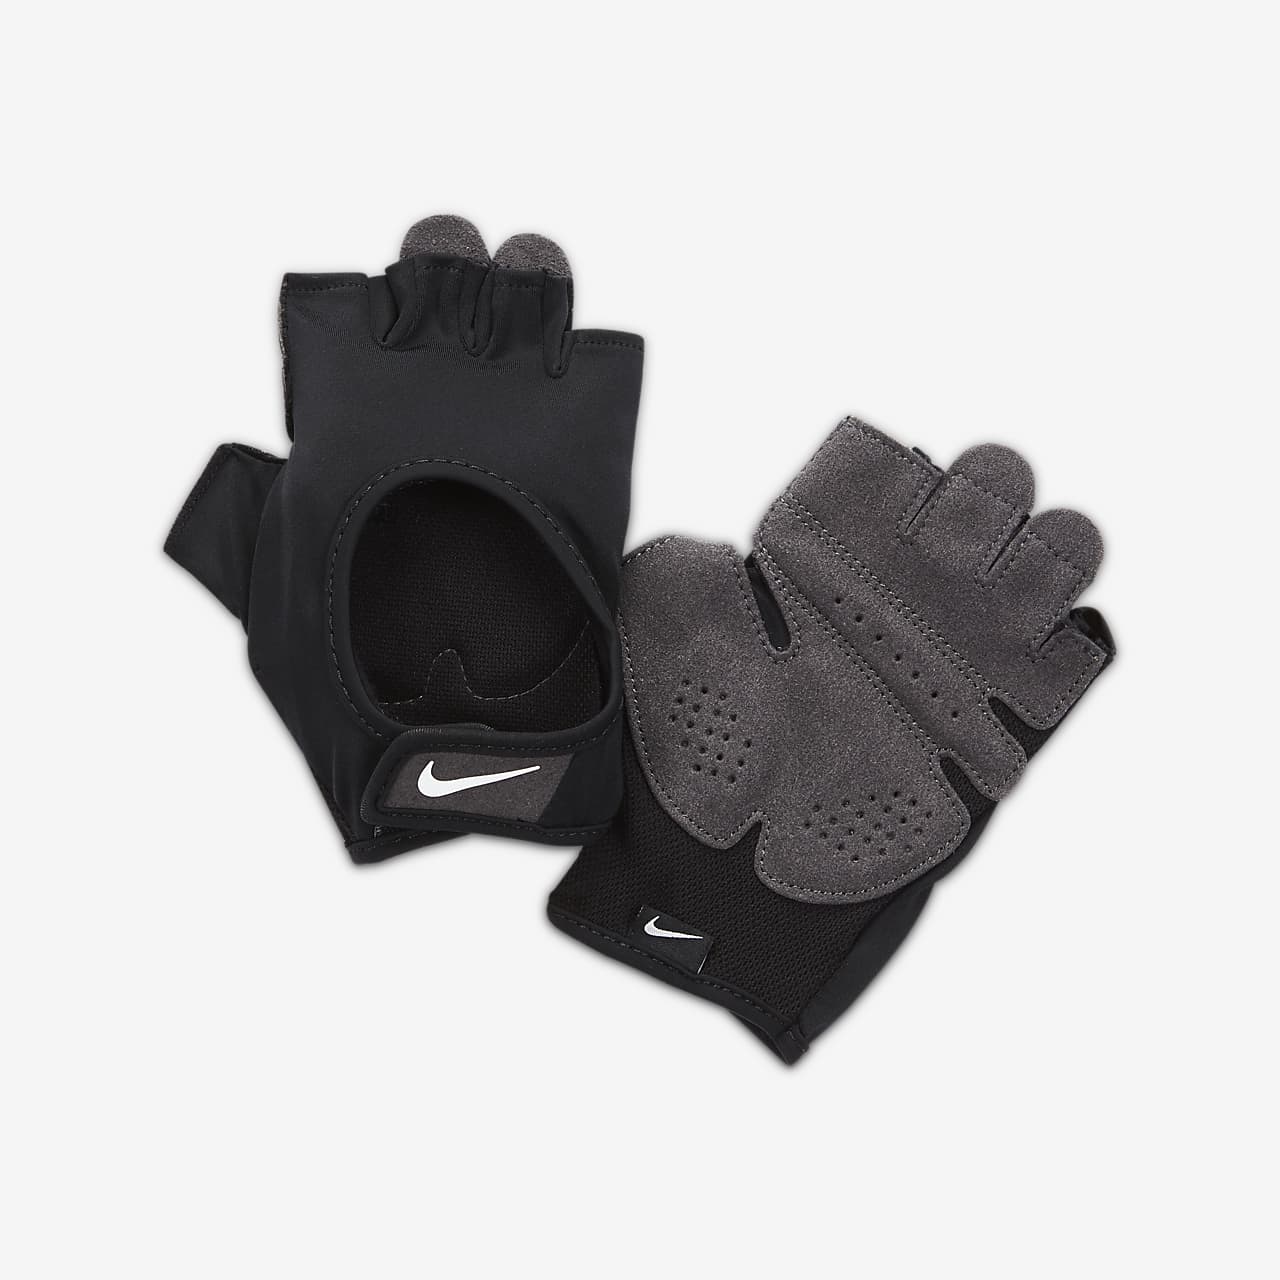 Nike Premium Fitness gants d'entrainement et musculation homme